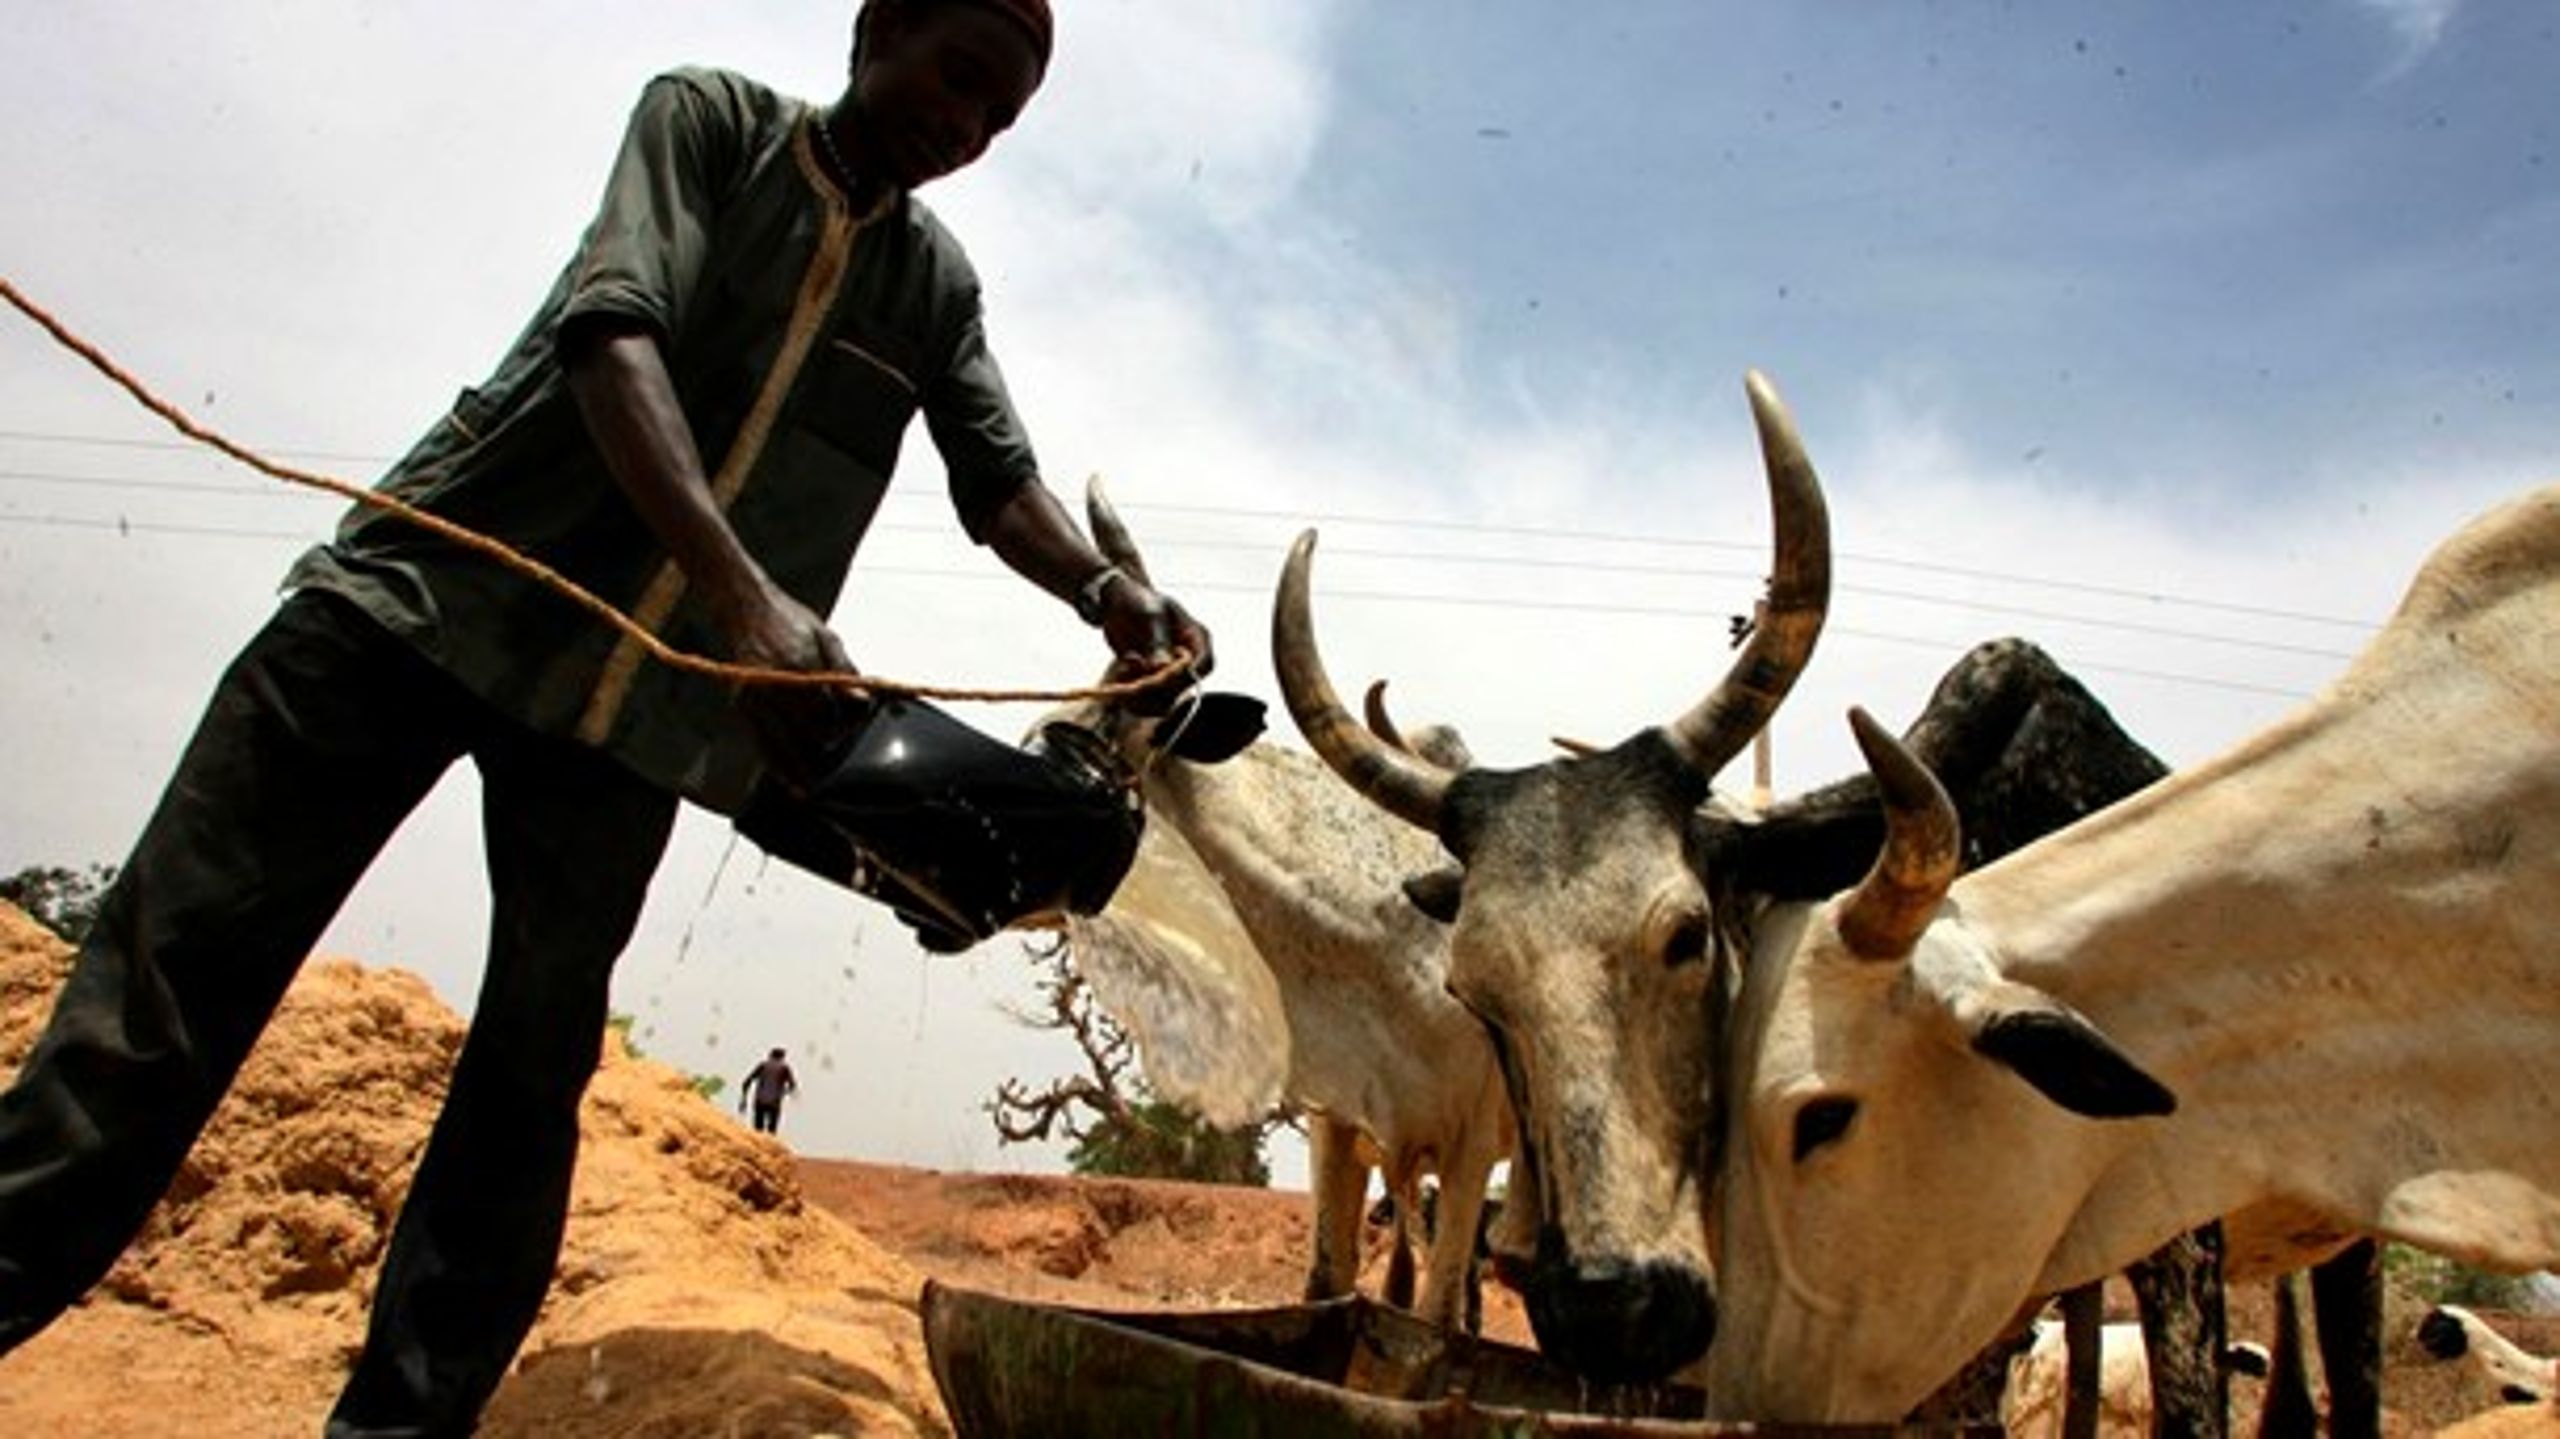 Nigeriansk&nbsp;bonde med sine kvæg. EU's Afrika-politikker er med til at fastholde bønder som ham i fattigdom, skriver Karsten Riise.&nbsp;